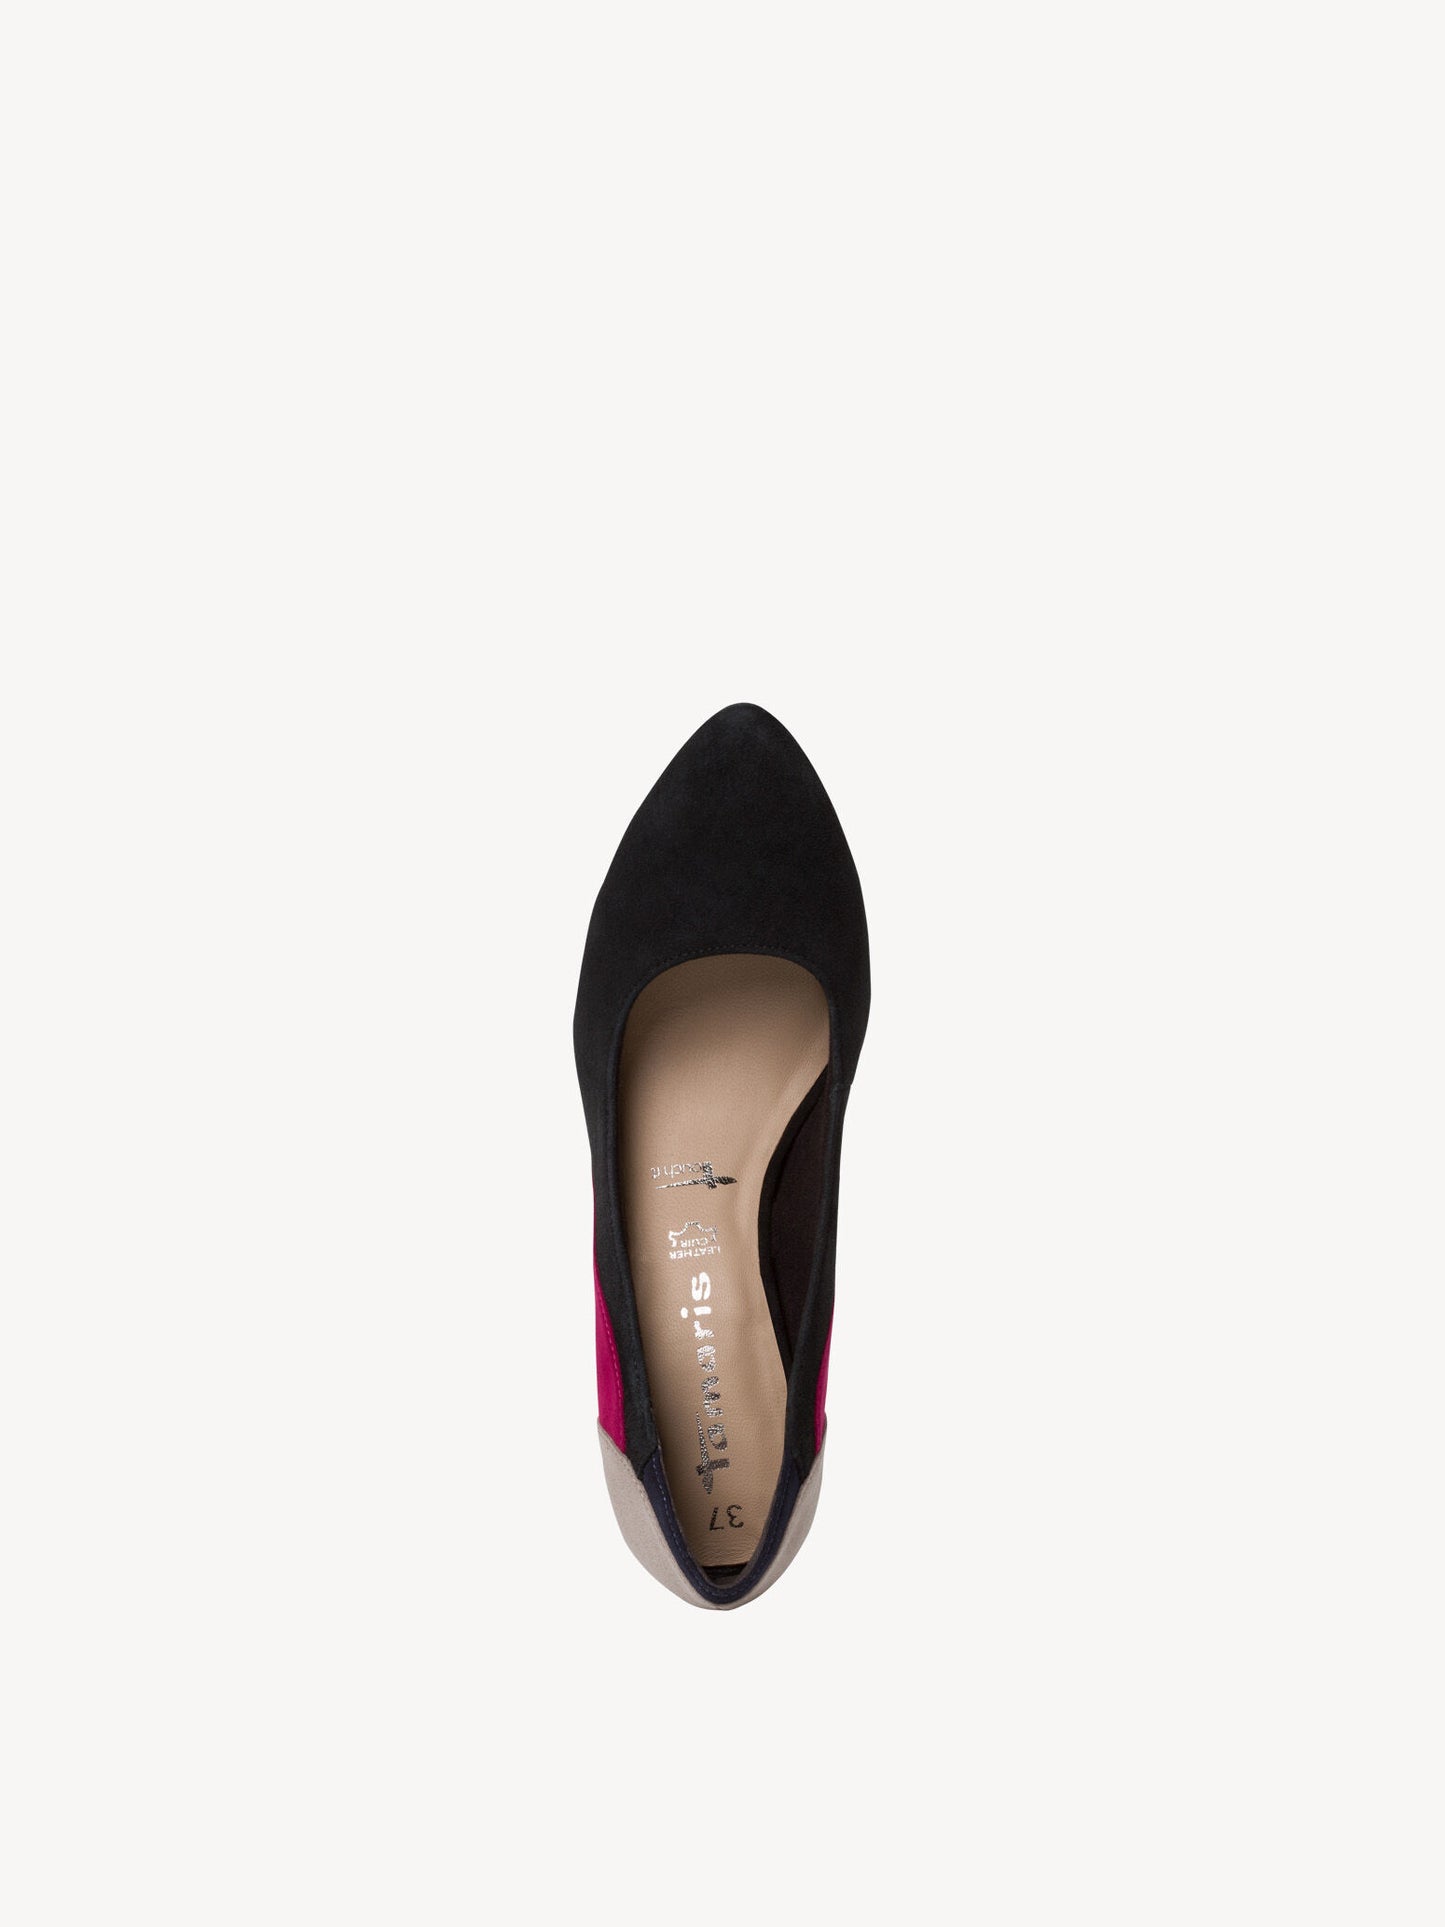 Tamaris Women's 1-22405-25 Heel Shoes Black Comb